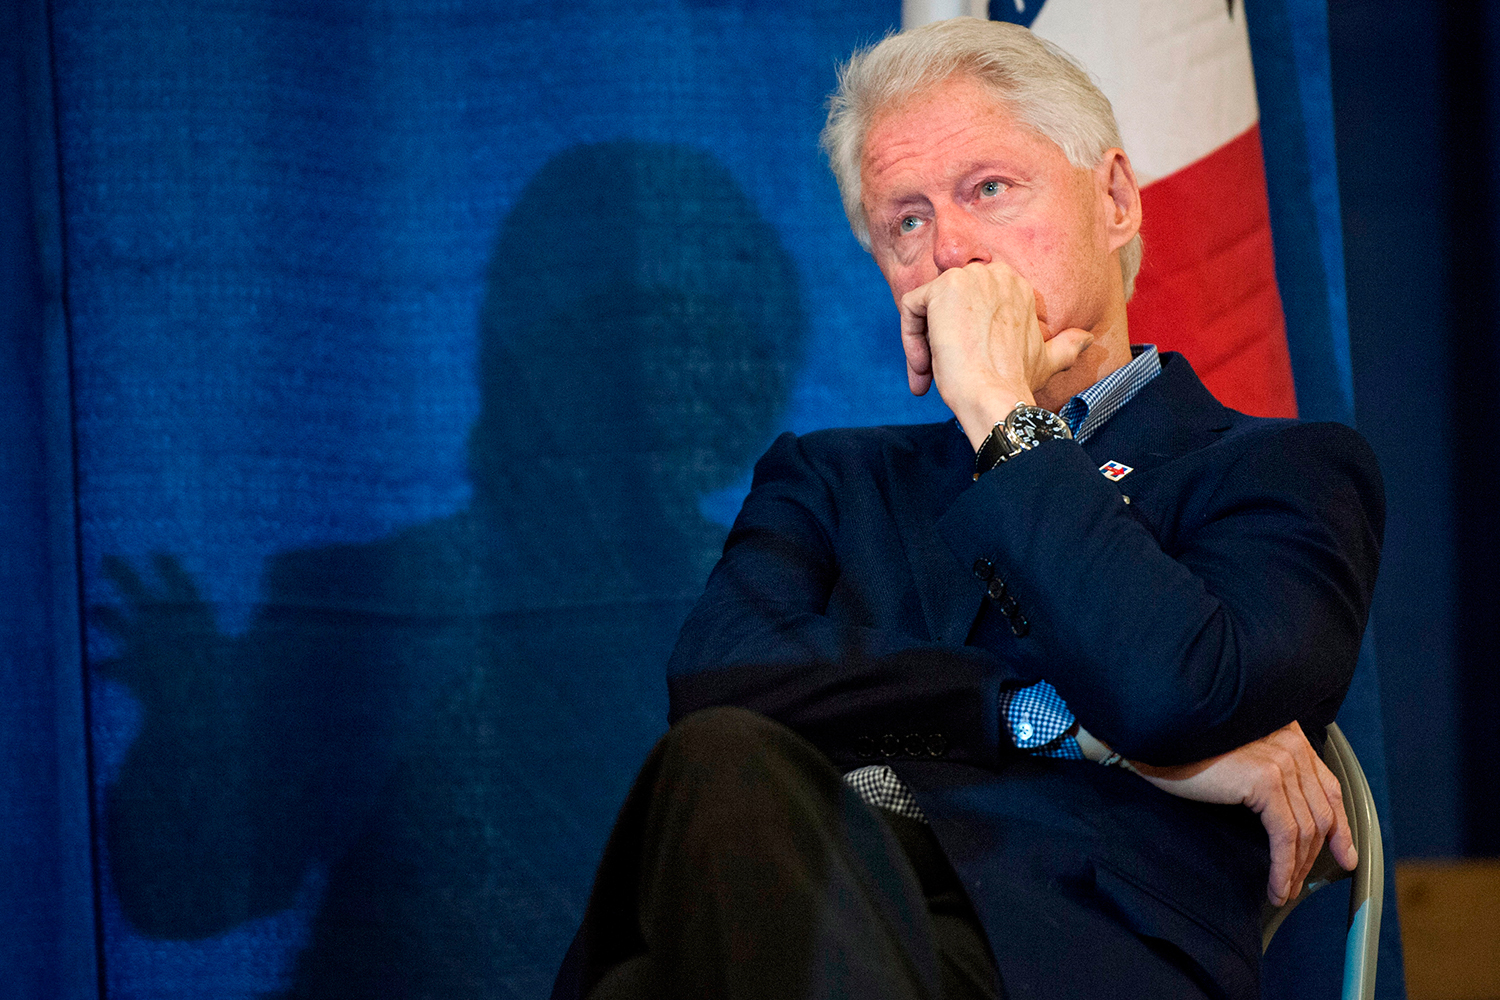 En un nuevo vídeo el Estado Islámico llama a Bill Clinton "fornicador"